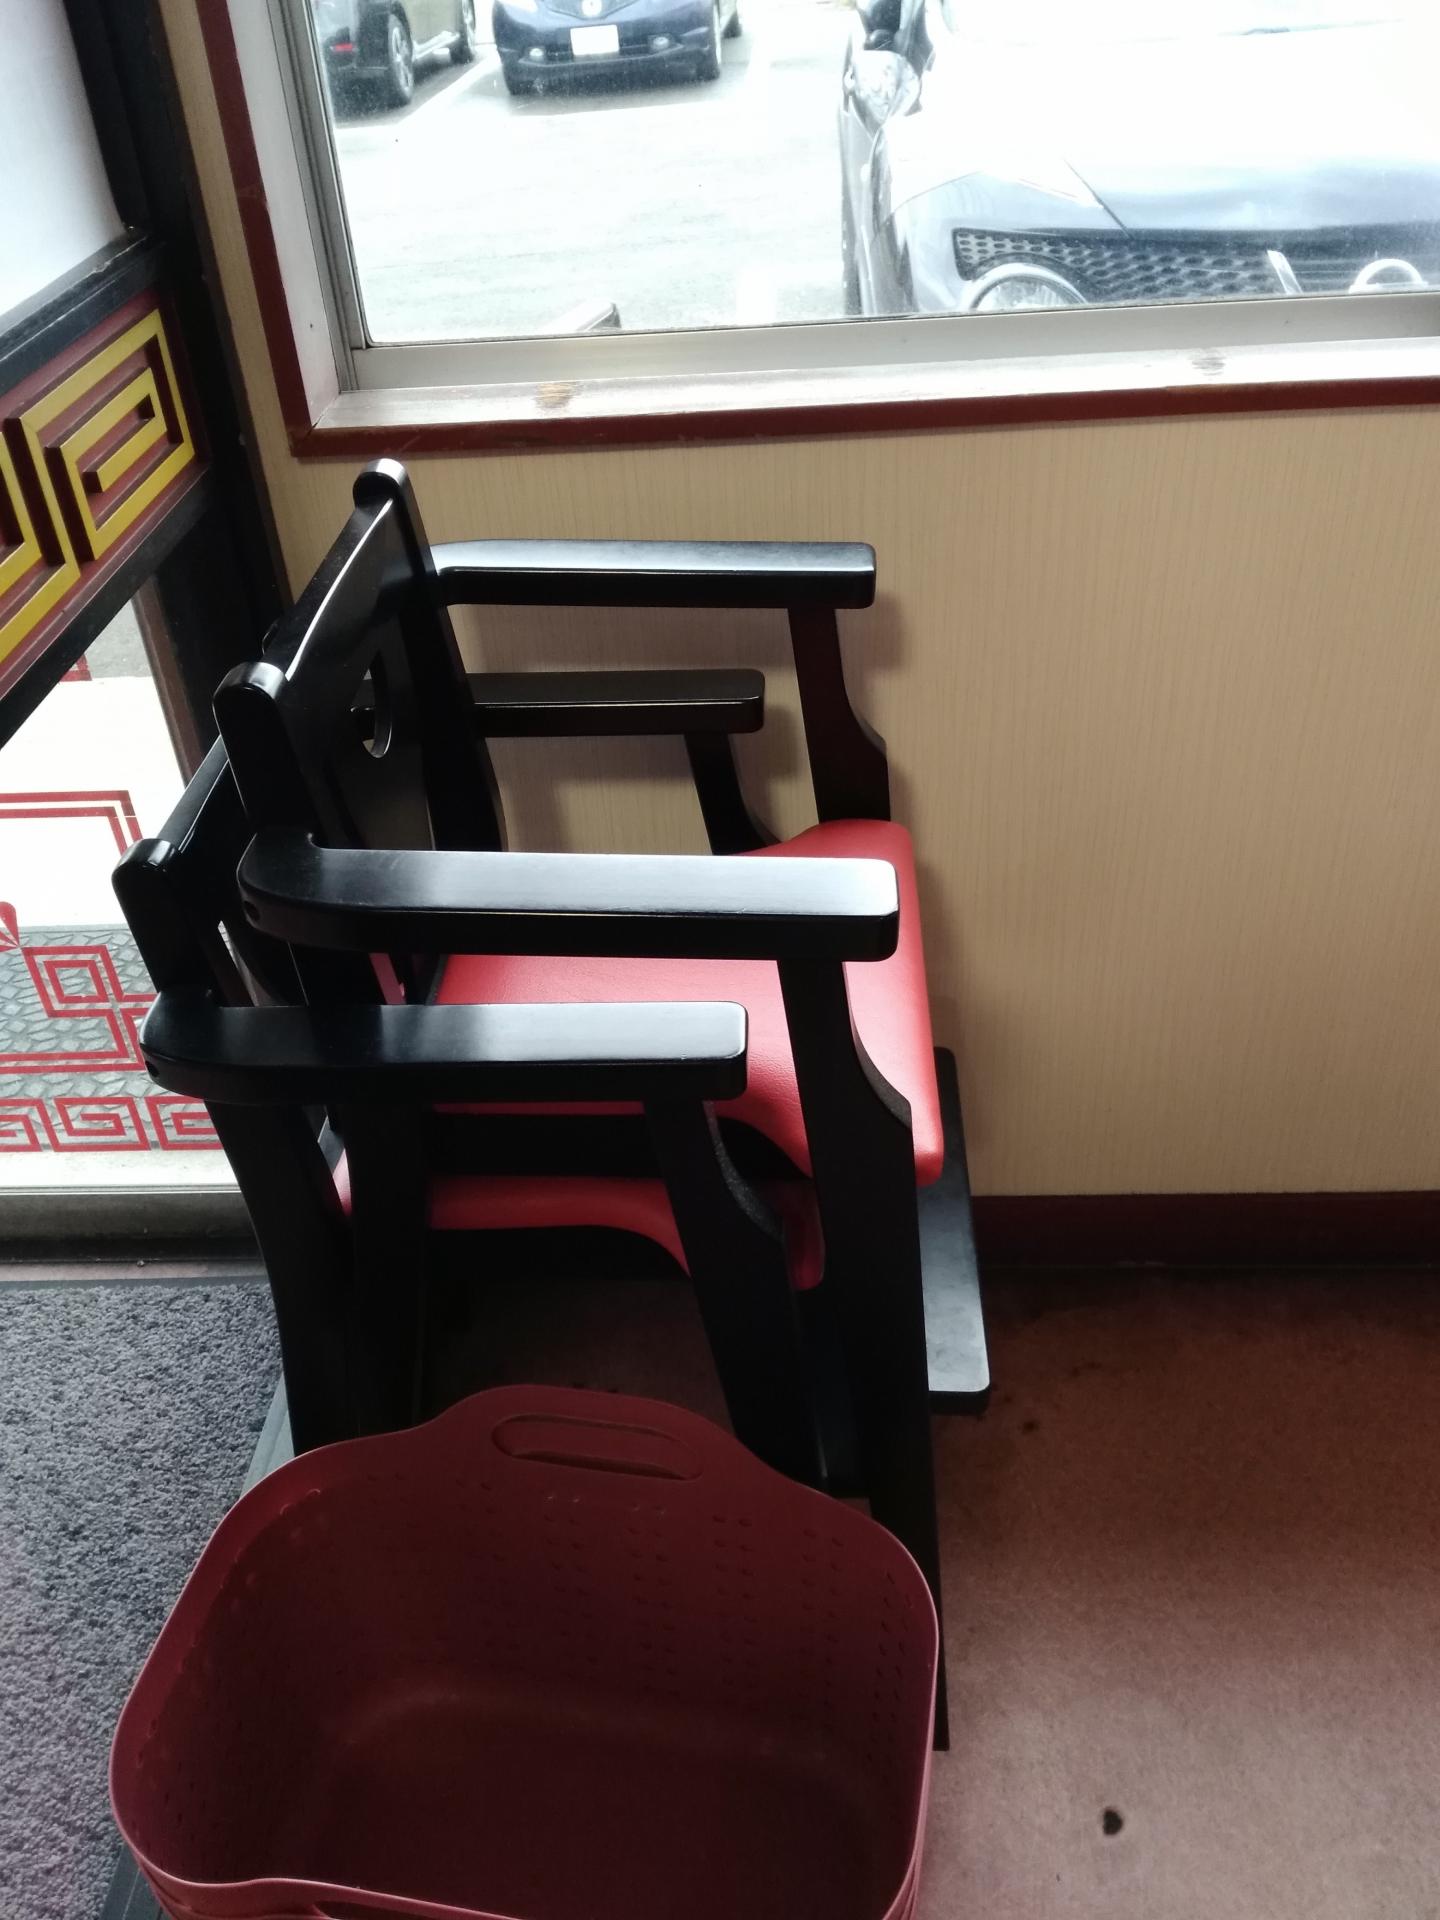  テーブル席用子ども用椅子の写真[208KB]